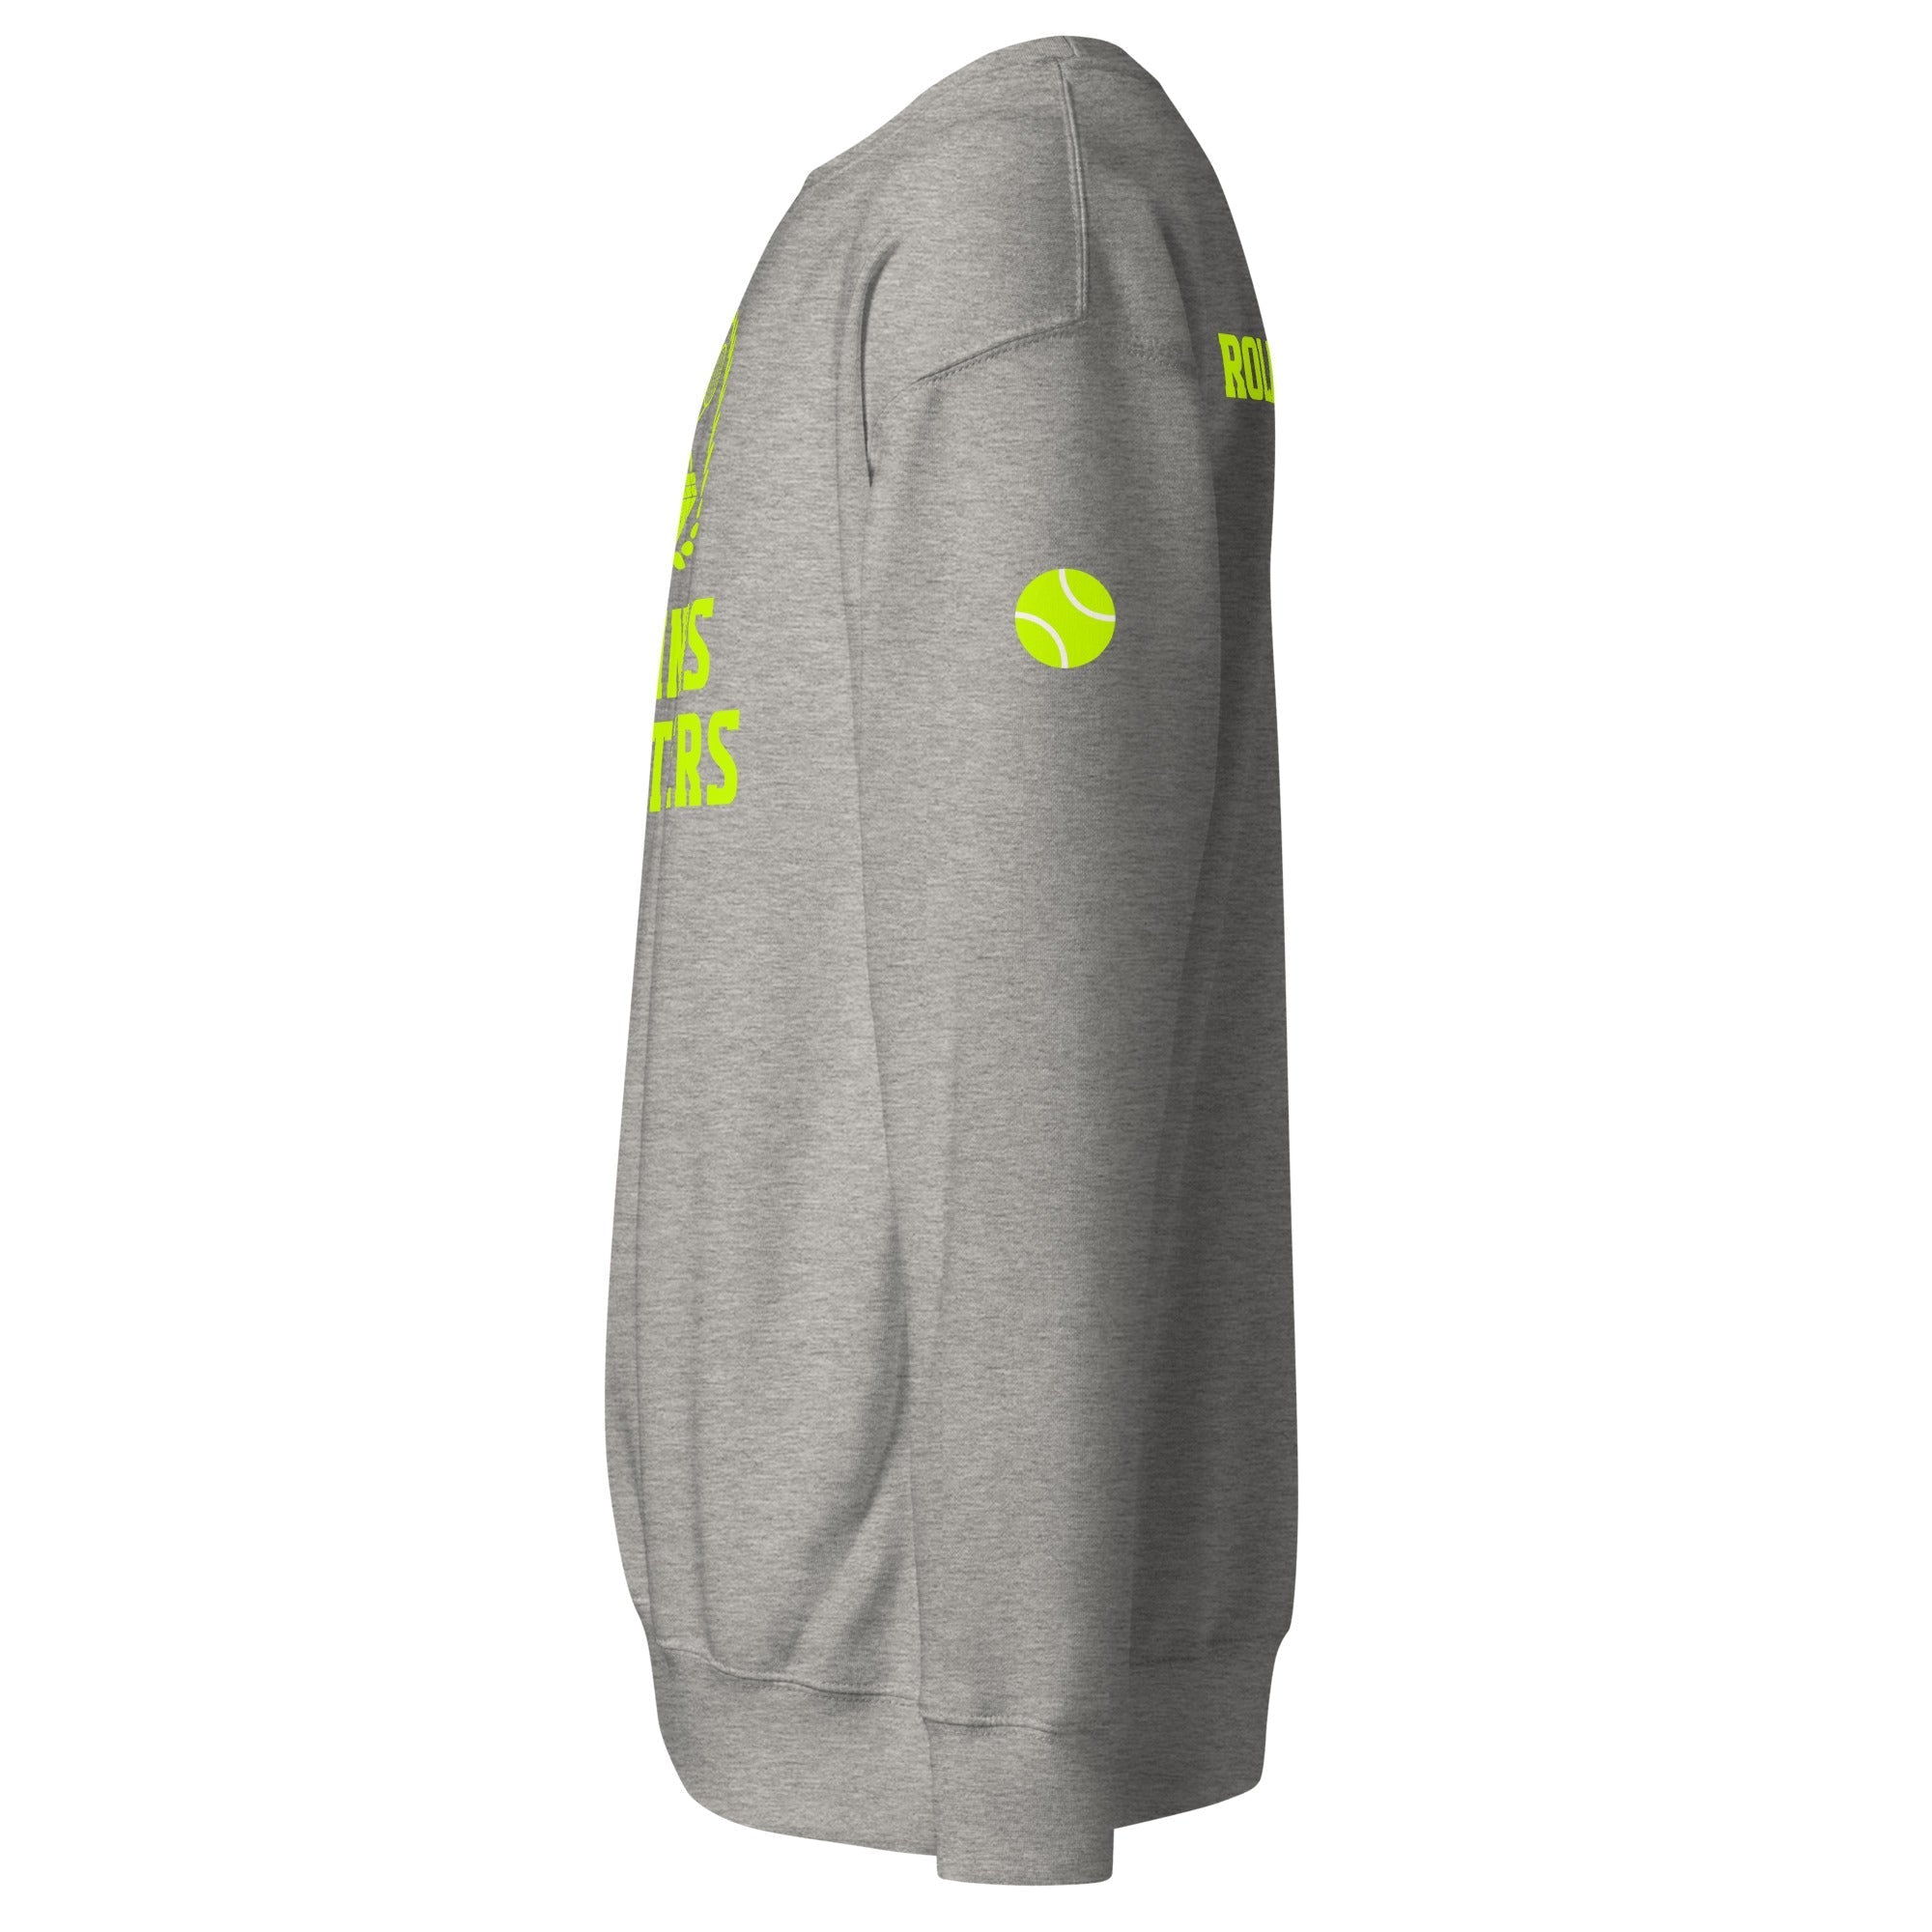 Unisex Premium Sweatshirt - Tennis Masters Roland Garros - GRAPHIC T-SHIRTS